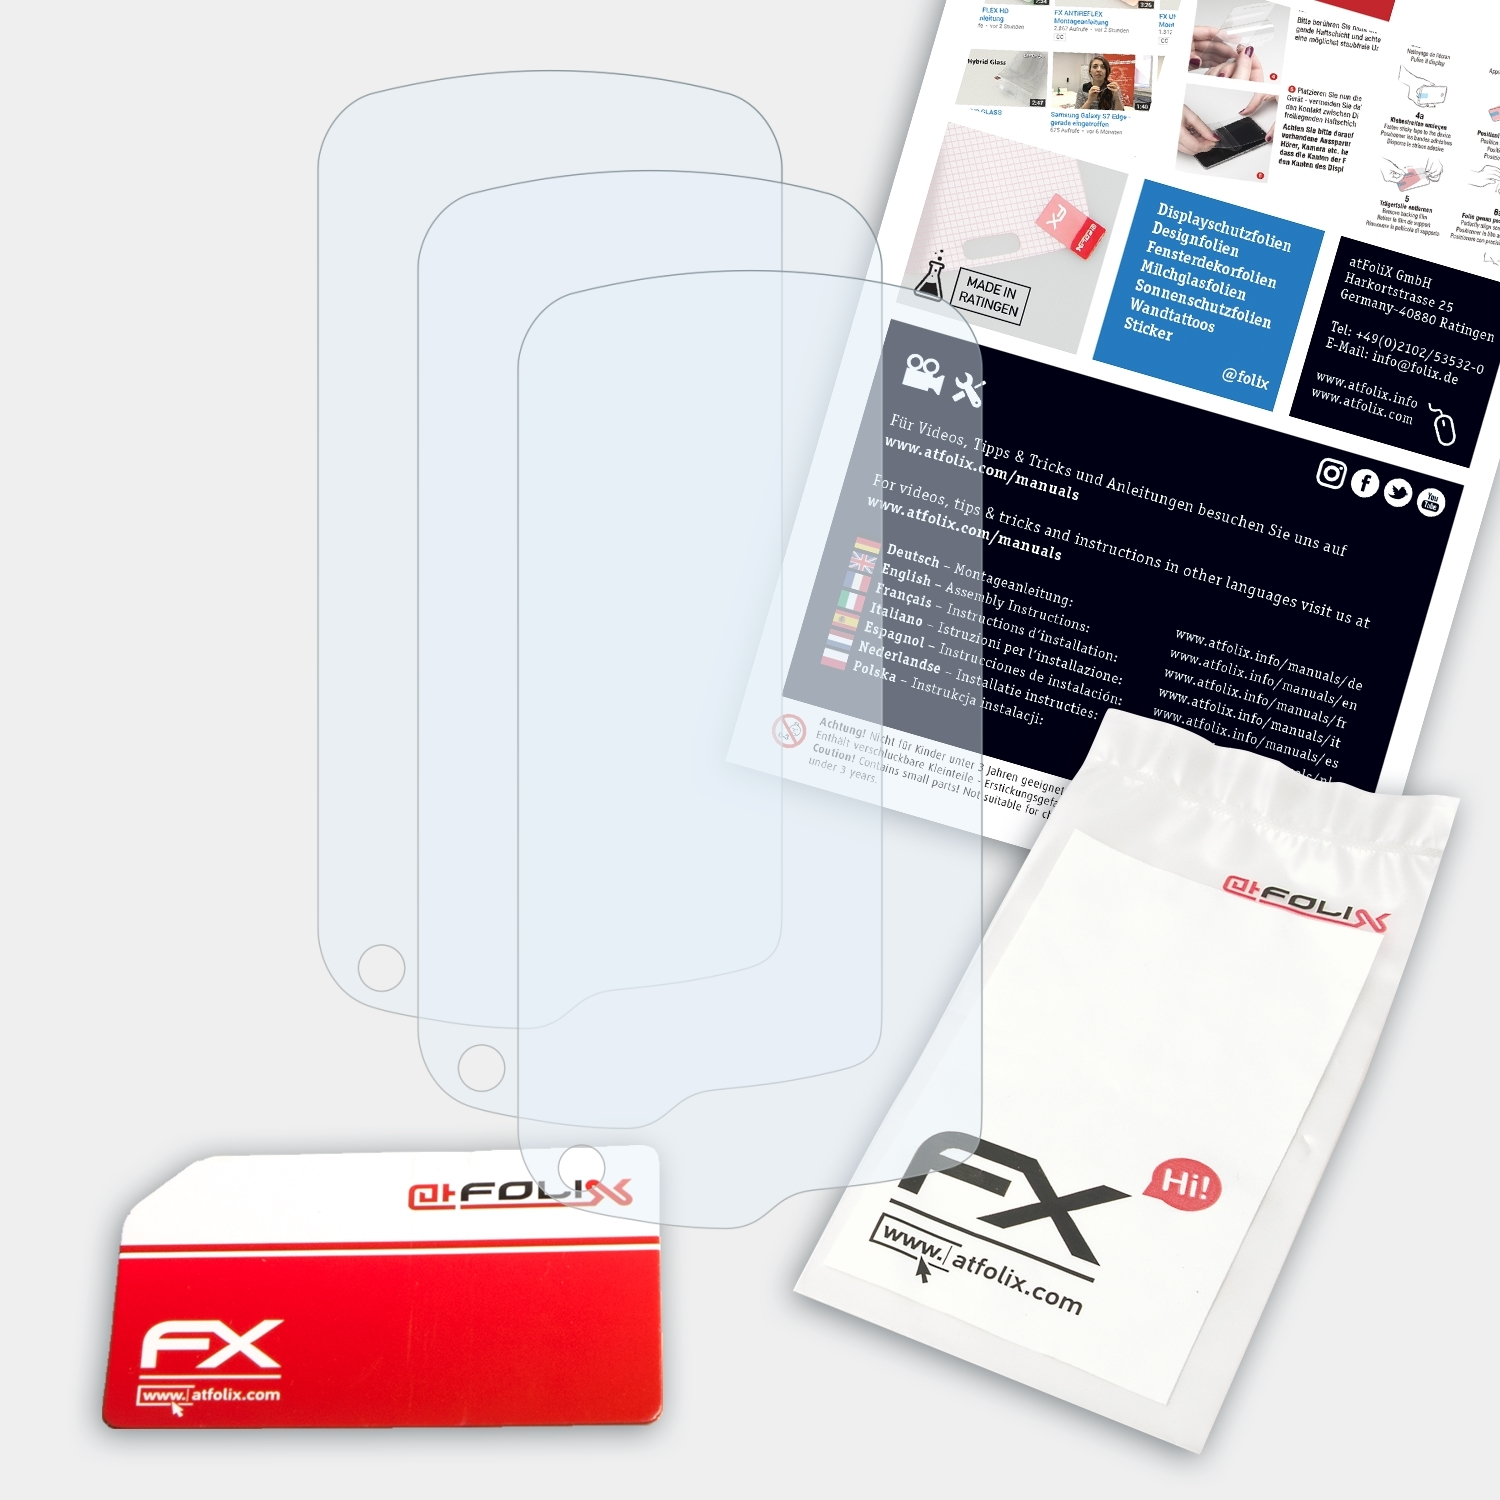 ATFOLIX 3x FX-Clear Displayschutz(für Garmin Monterra)